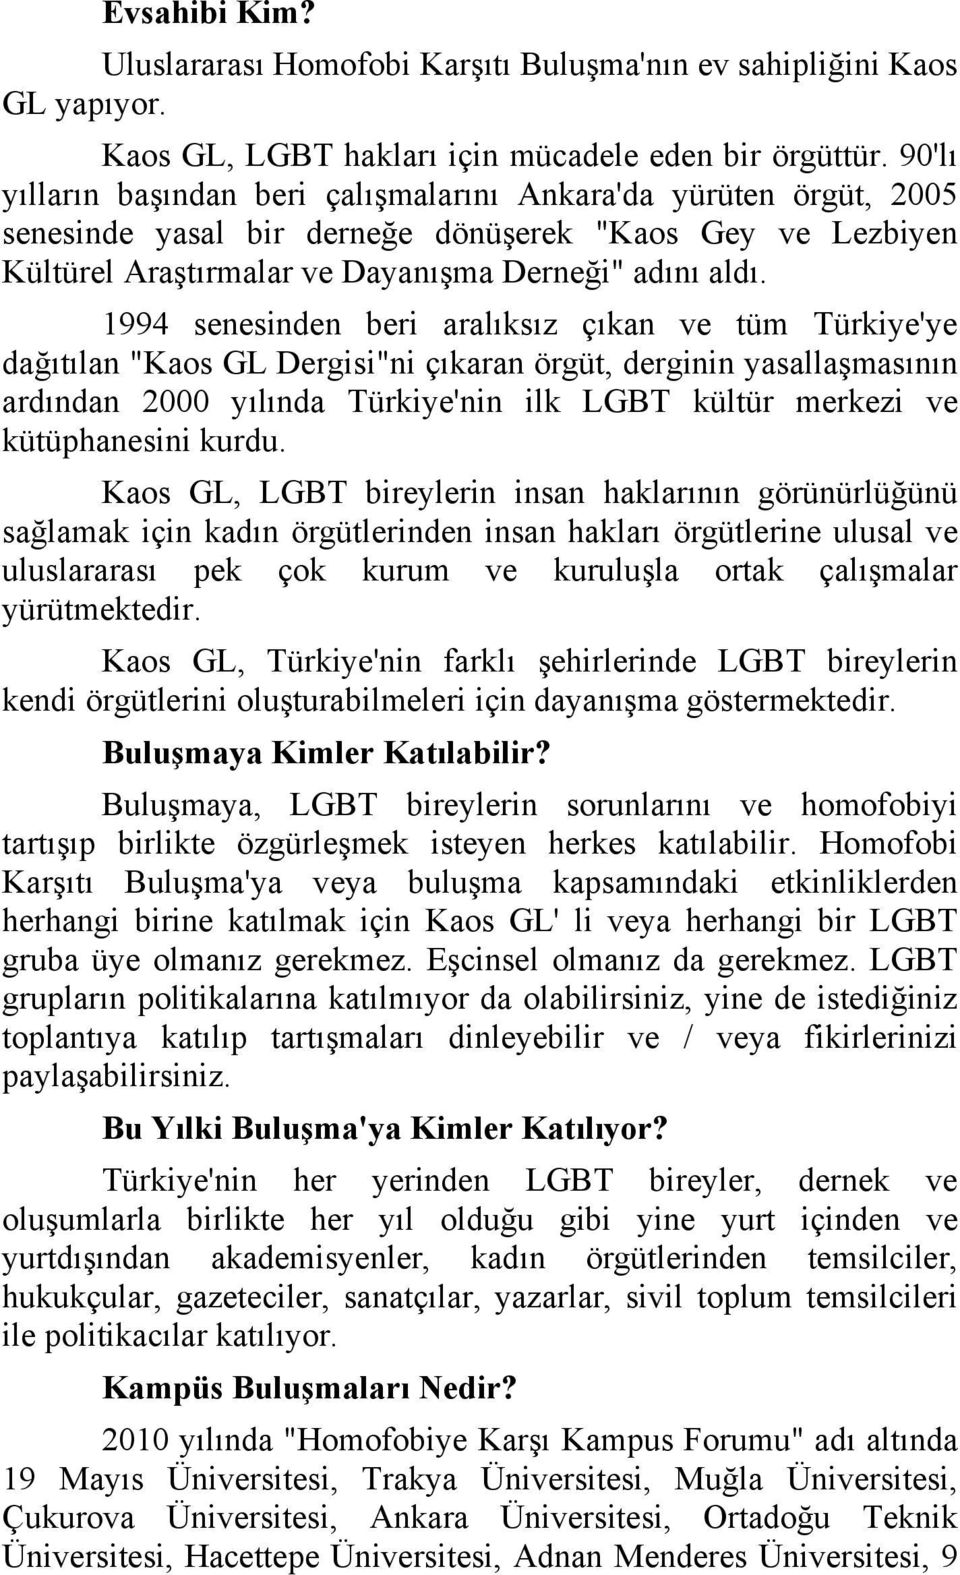 1994 senesinden beri aralıksız çıkan ve tüm Türkiye'ye dağıtılan "Kaos GL Dergisi"ni çıkaran örgüt, derginin yasallaşmasının ardından 2000 yılında Türkiye'nin ilk LGBT kültür merkezi ve kütüphanesini